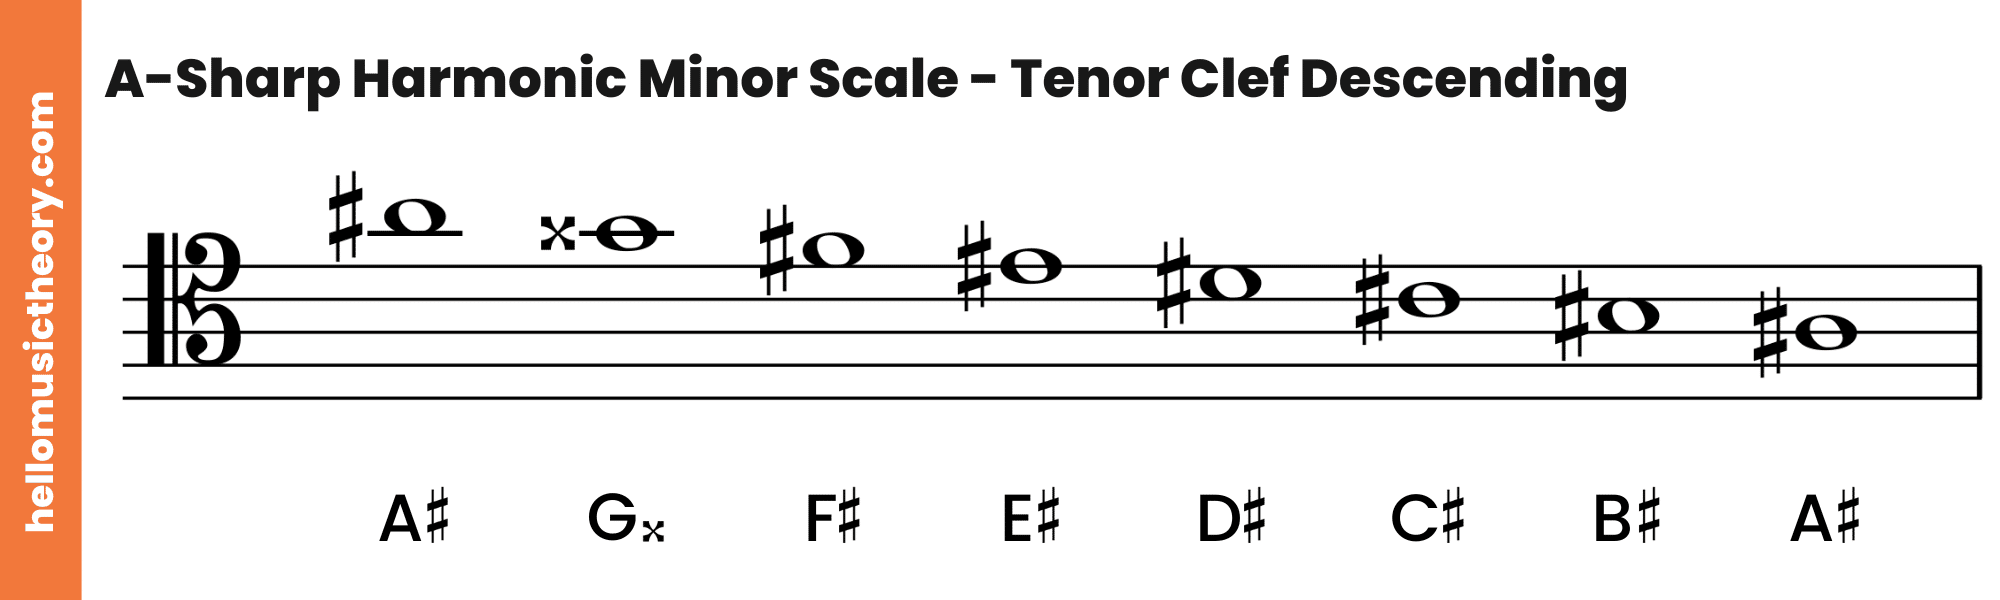 A-Sharp Harmonic Minor Scale Tenor Clef Descending